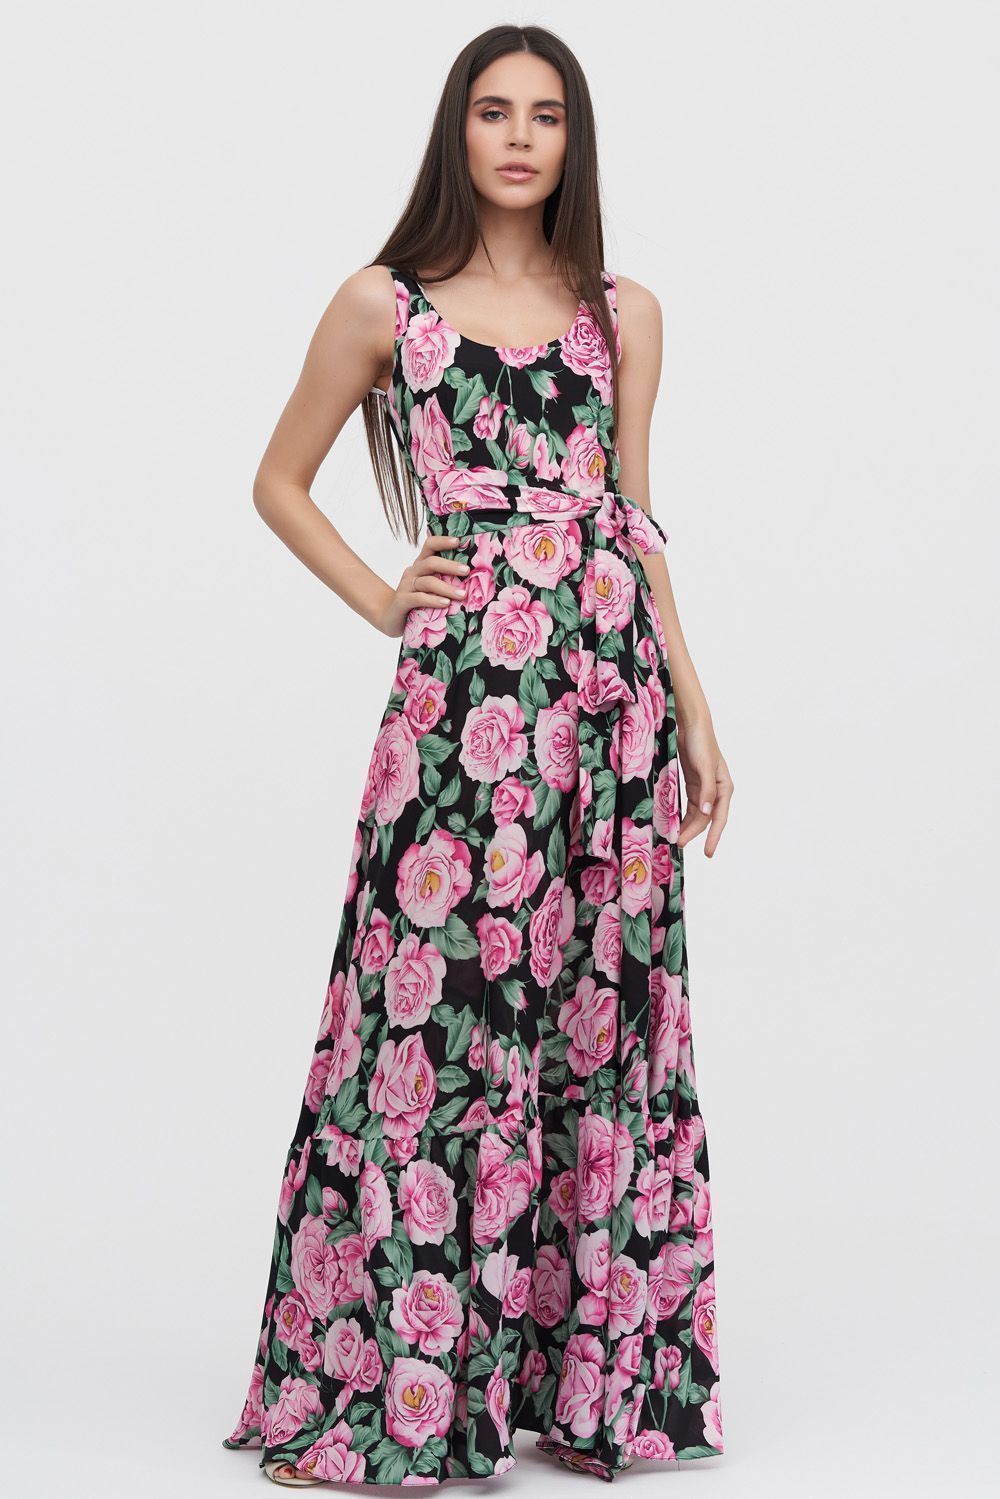 Длинное платье с принтом роз